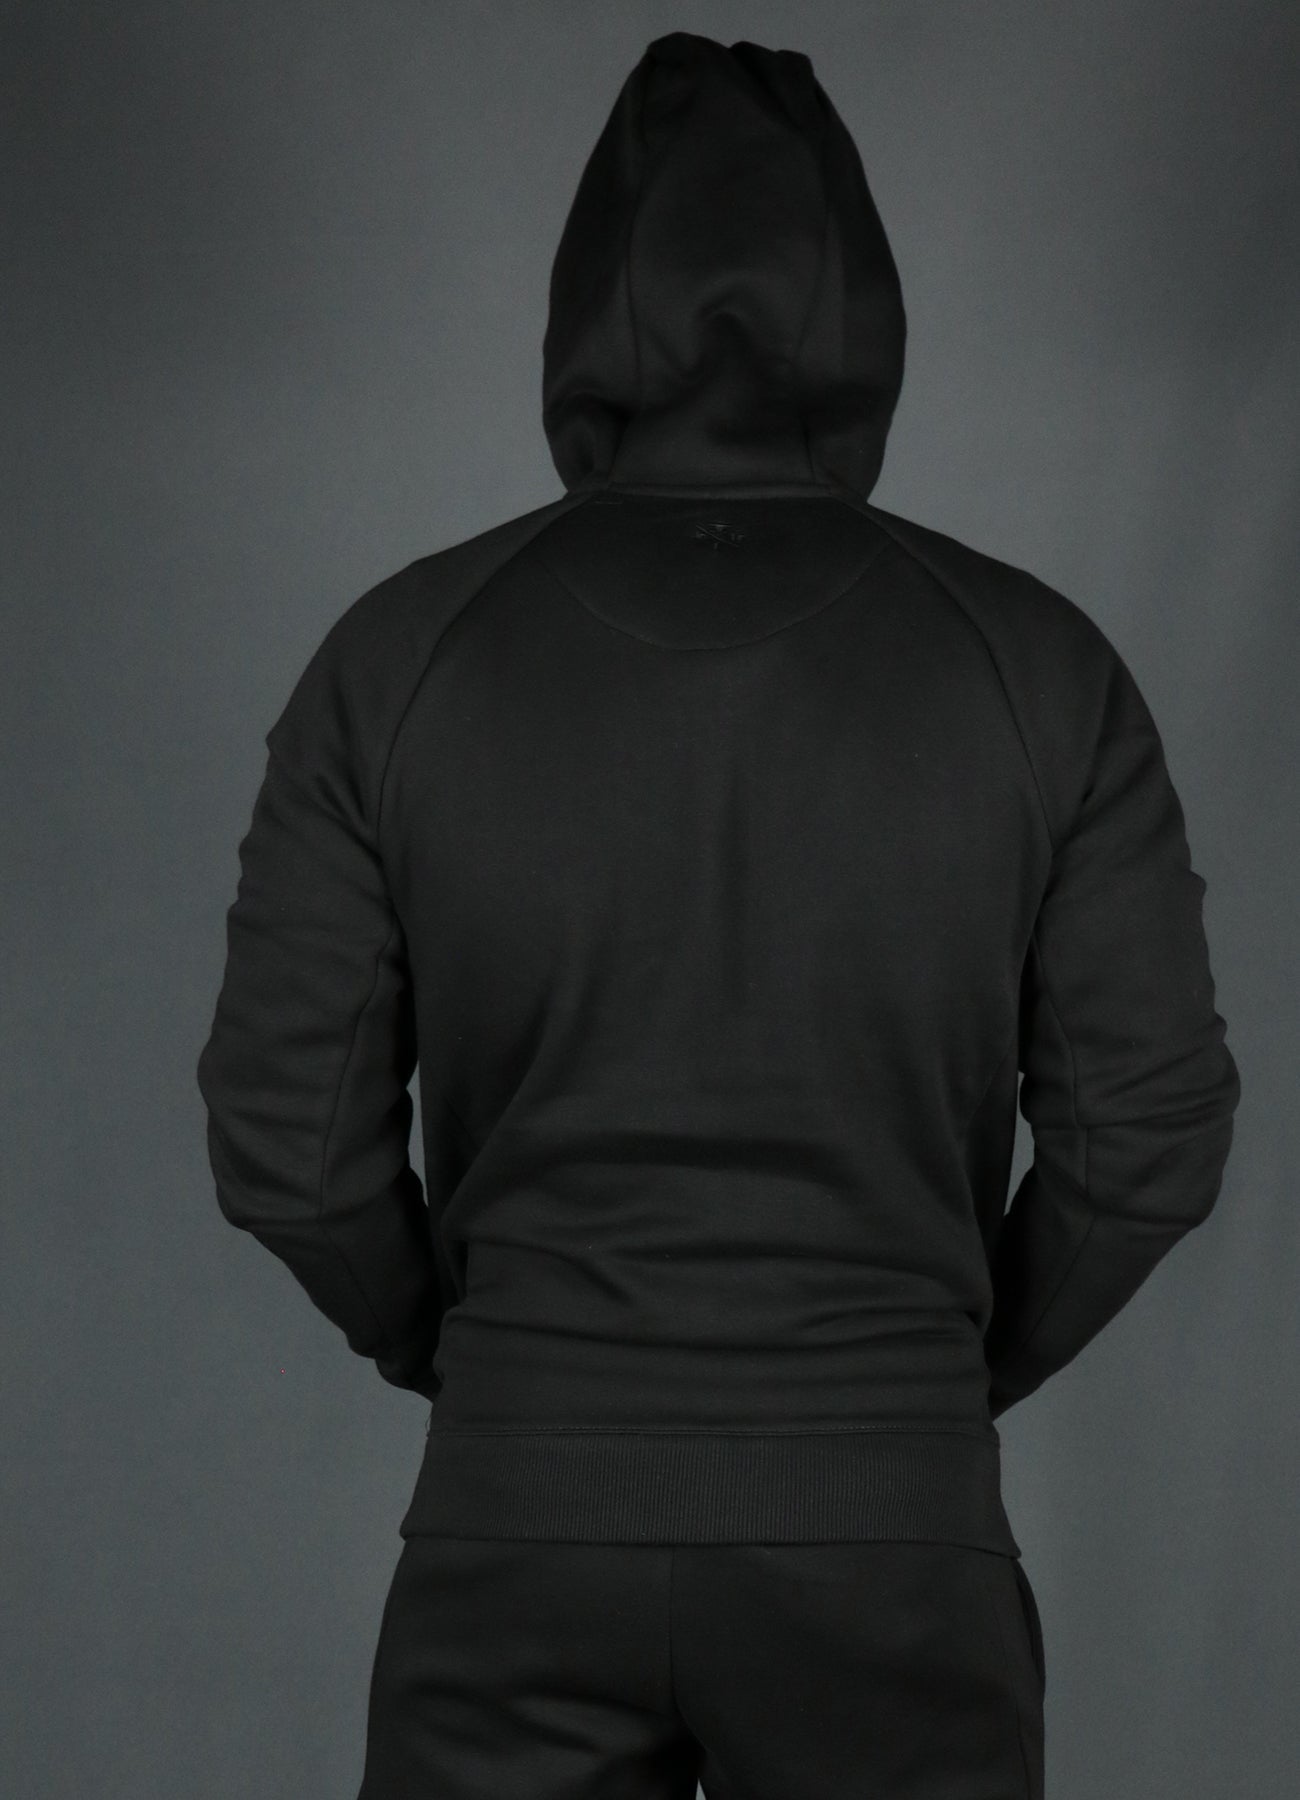 The black Jordan Craig basic fleece zipup hoodie from the back.